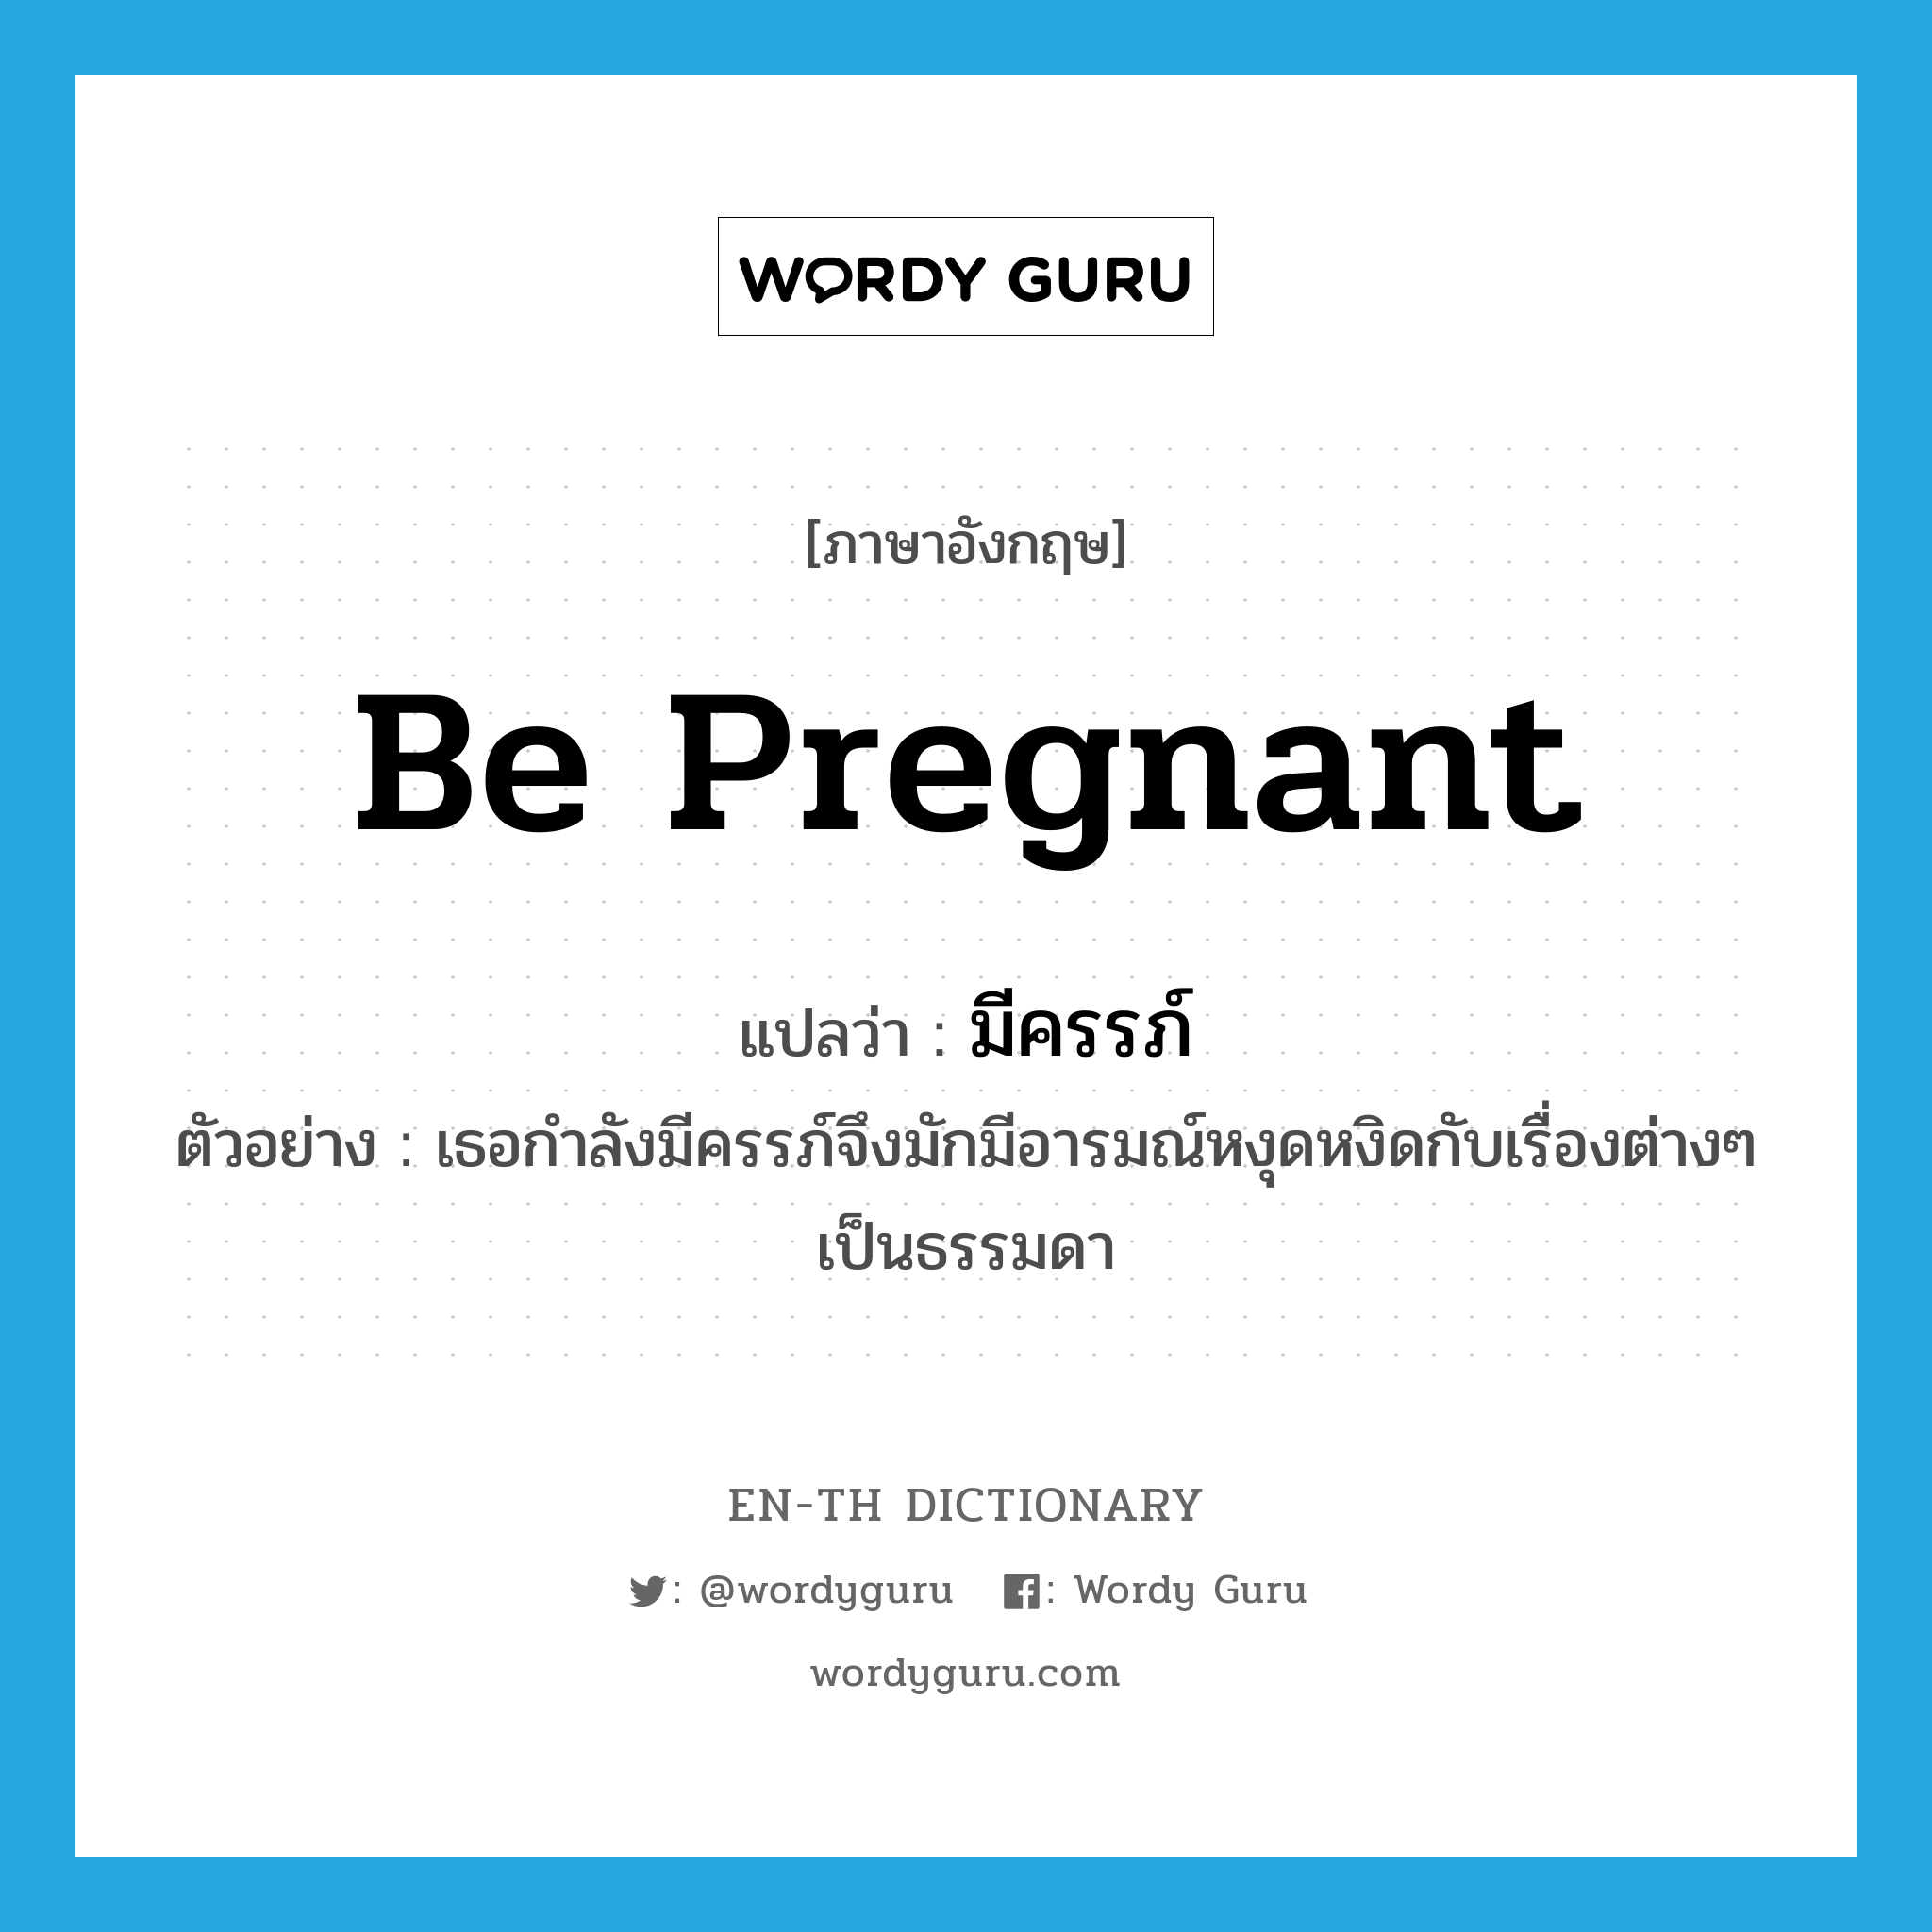 be pregnant แปลว่า?, คำศัพท์ภาษาอังกฤษ be pregnant แปลว่า มีครรภ์ ประเภท V ตัวอย่าง เธอกำลังมีครรภ์จึงมักมีอารมณ์หงุดหงิดกับเรื่องต่างๆ เป็นธรรมดา หมวด V